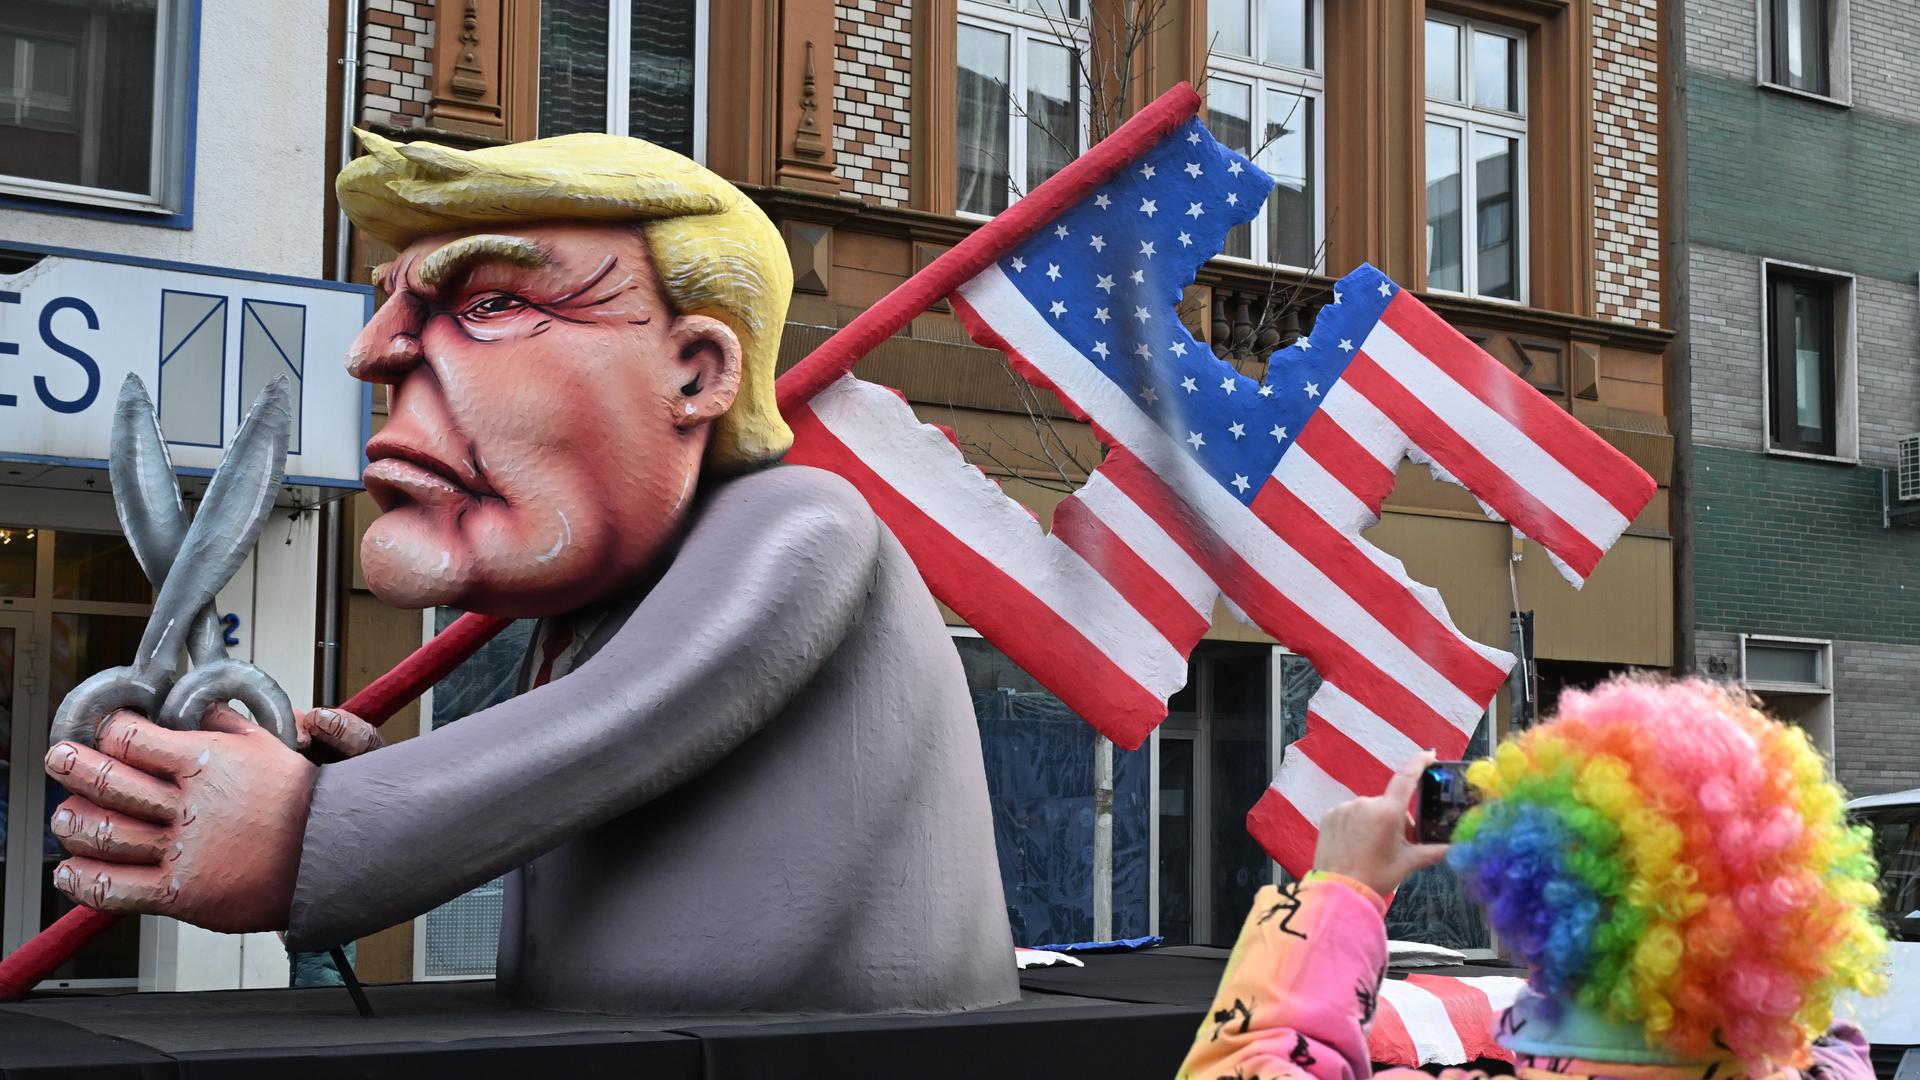 Der Mottowagen, der den designierten US-Präsidentschaftskandidaten Trump mit der US-Nationalflagge in Form eines Hakenkreuzes zeigt und mit einer Schere in der Hand, fährt im Rosenmontagszug.